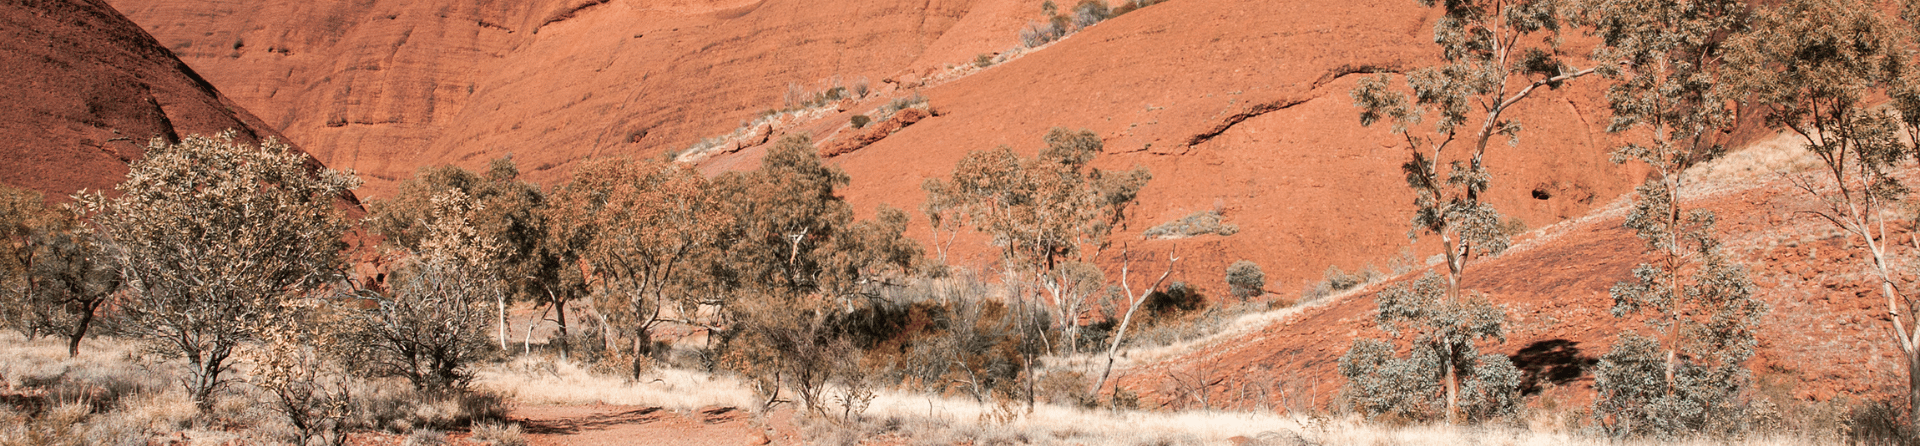 How long is the Uluru Base Walk?